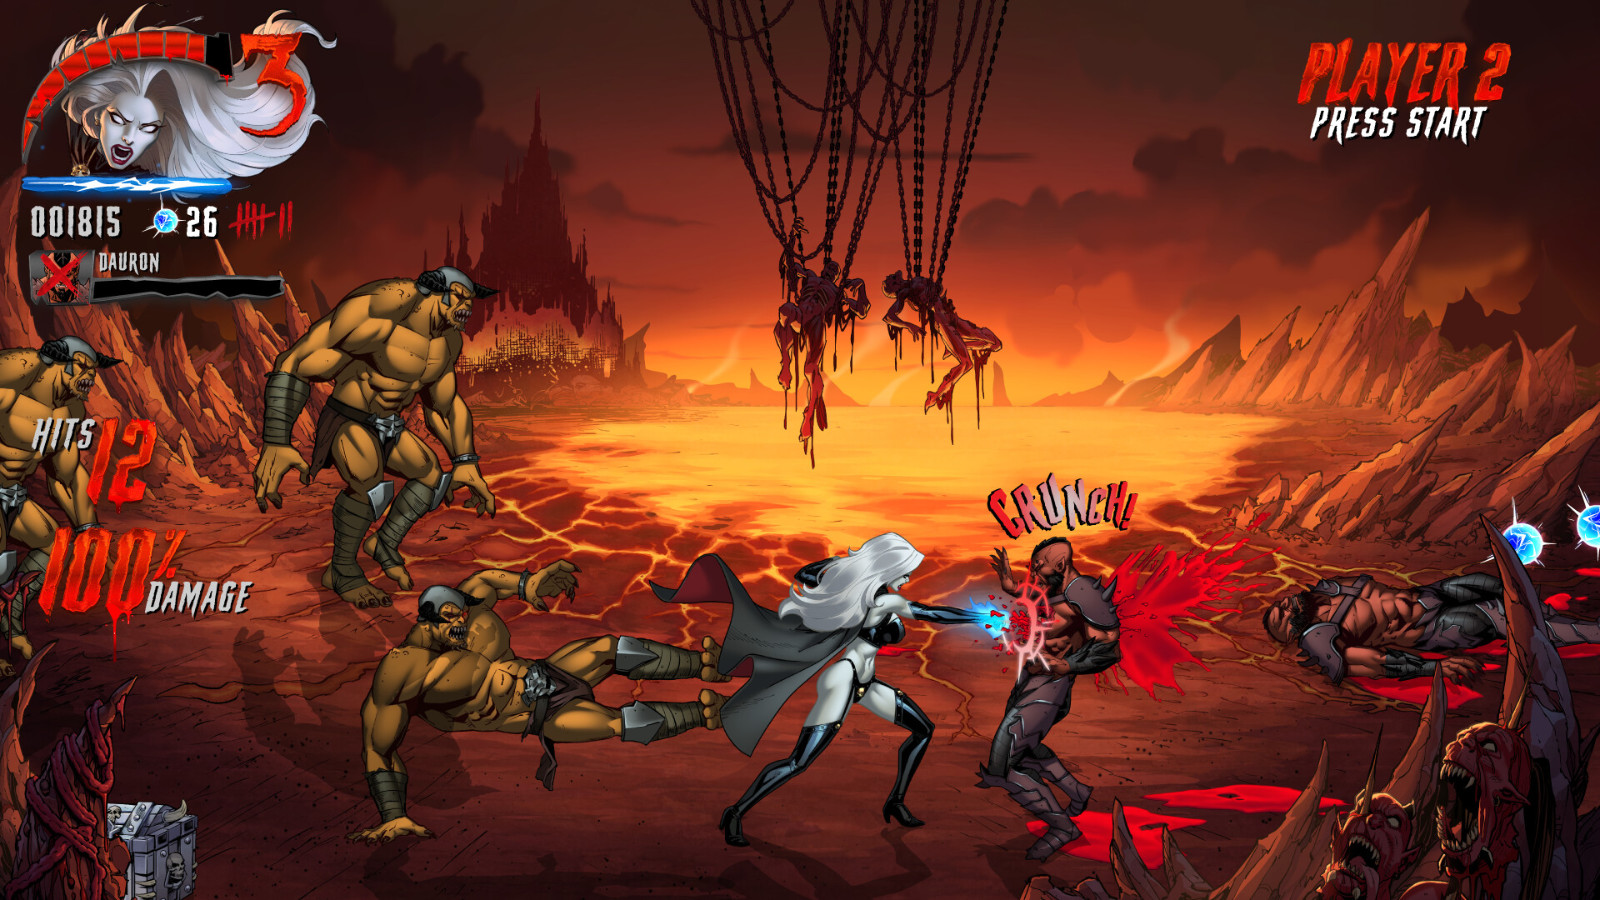 经典美漫改编游戏《Lady Death Demonicron》Steam页面上线 2026年发售